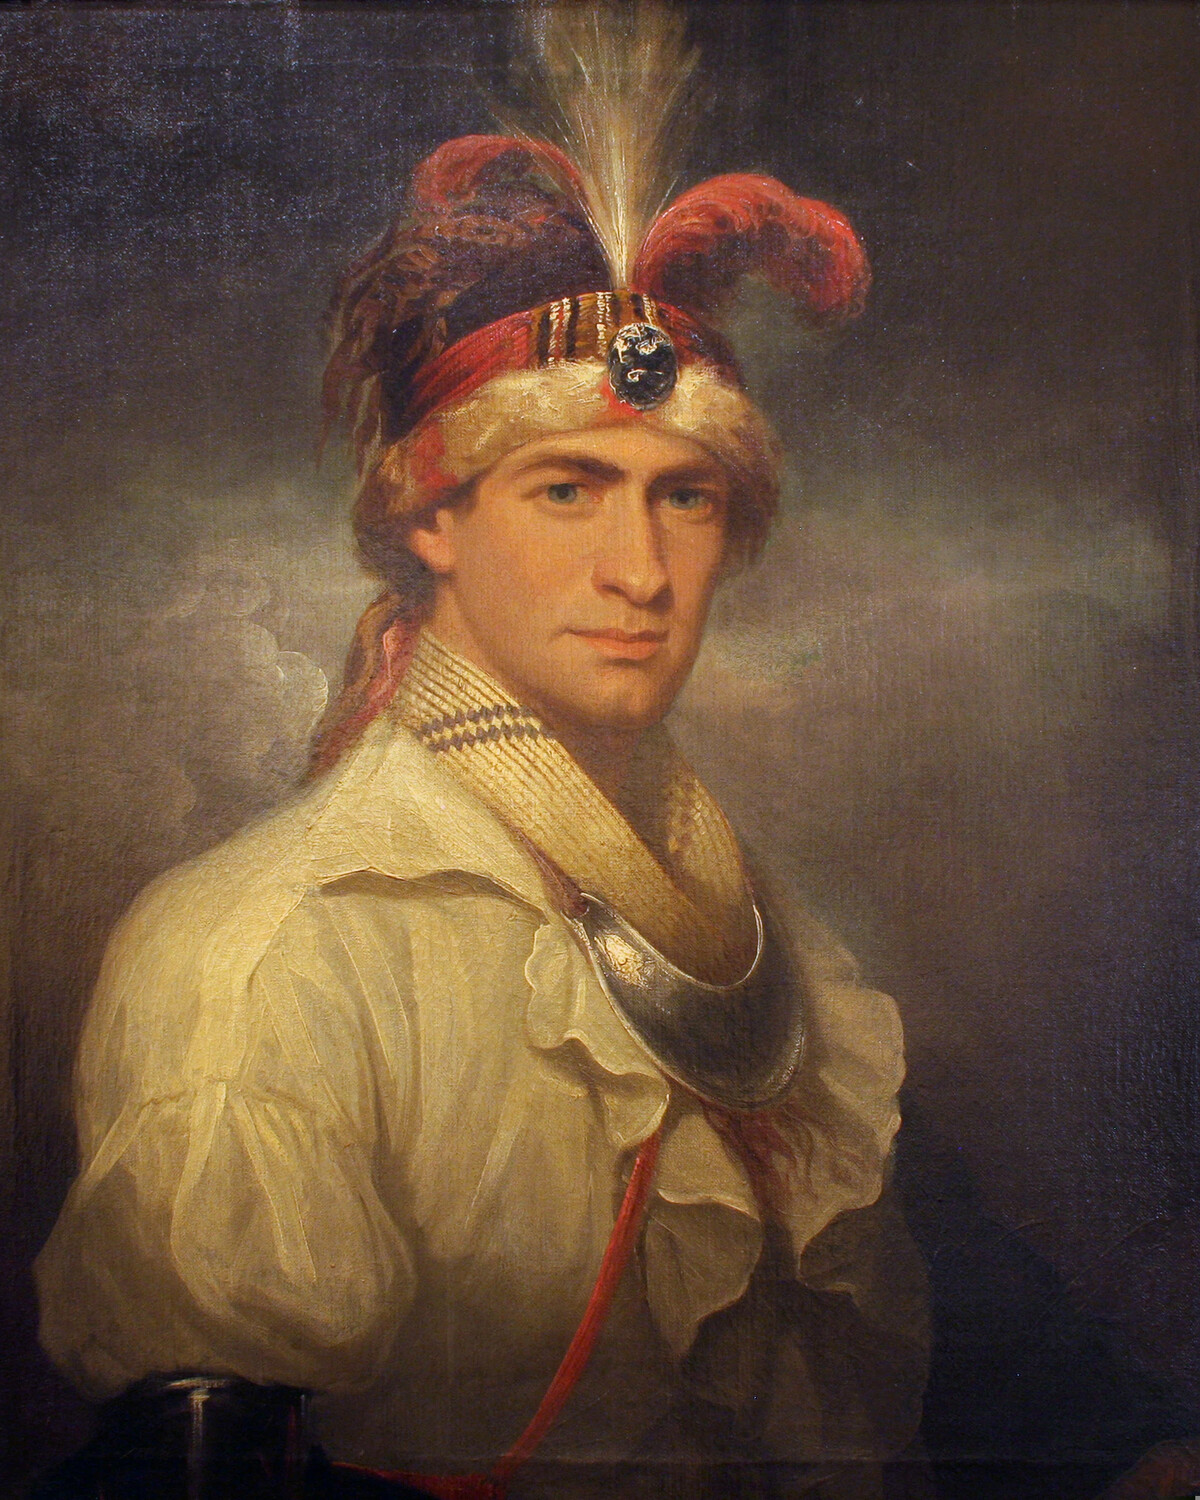 Мальчик 18 века. Уильям август Боулз. Уильям август Боулз 1763-1805. Артура Этерли портрет.